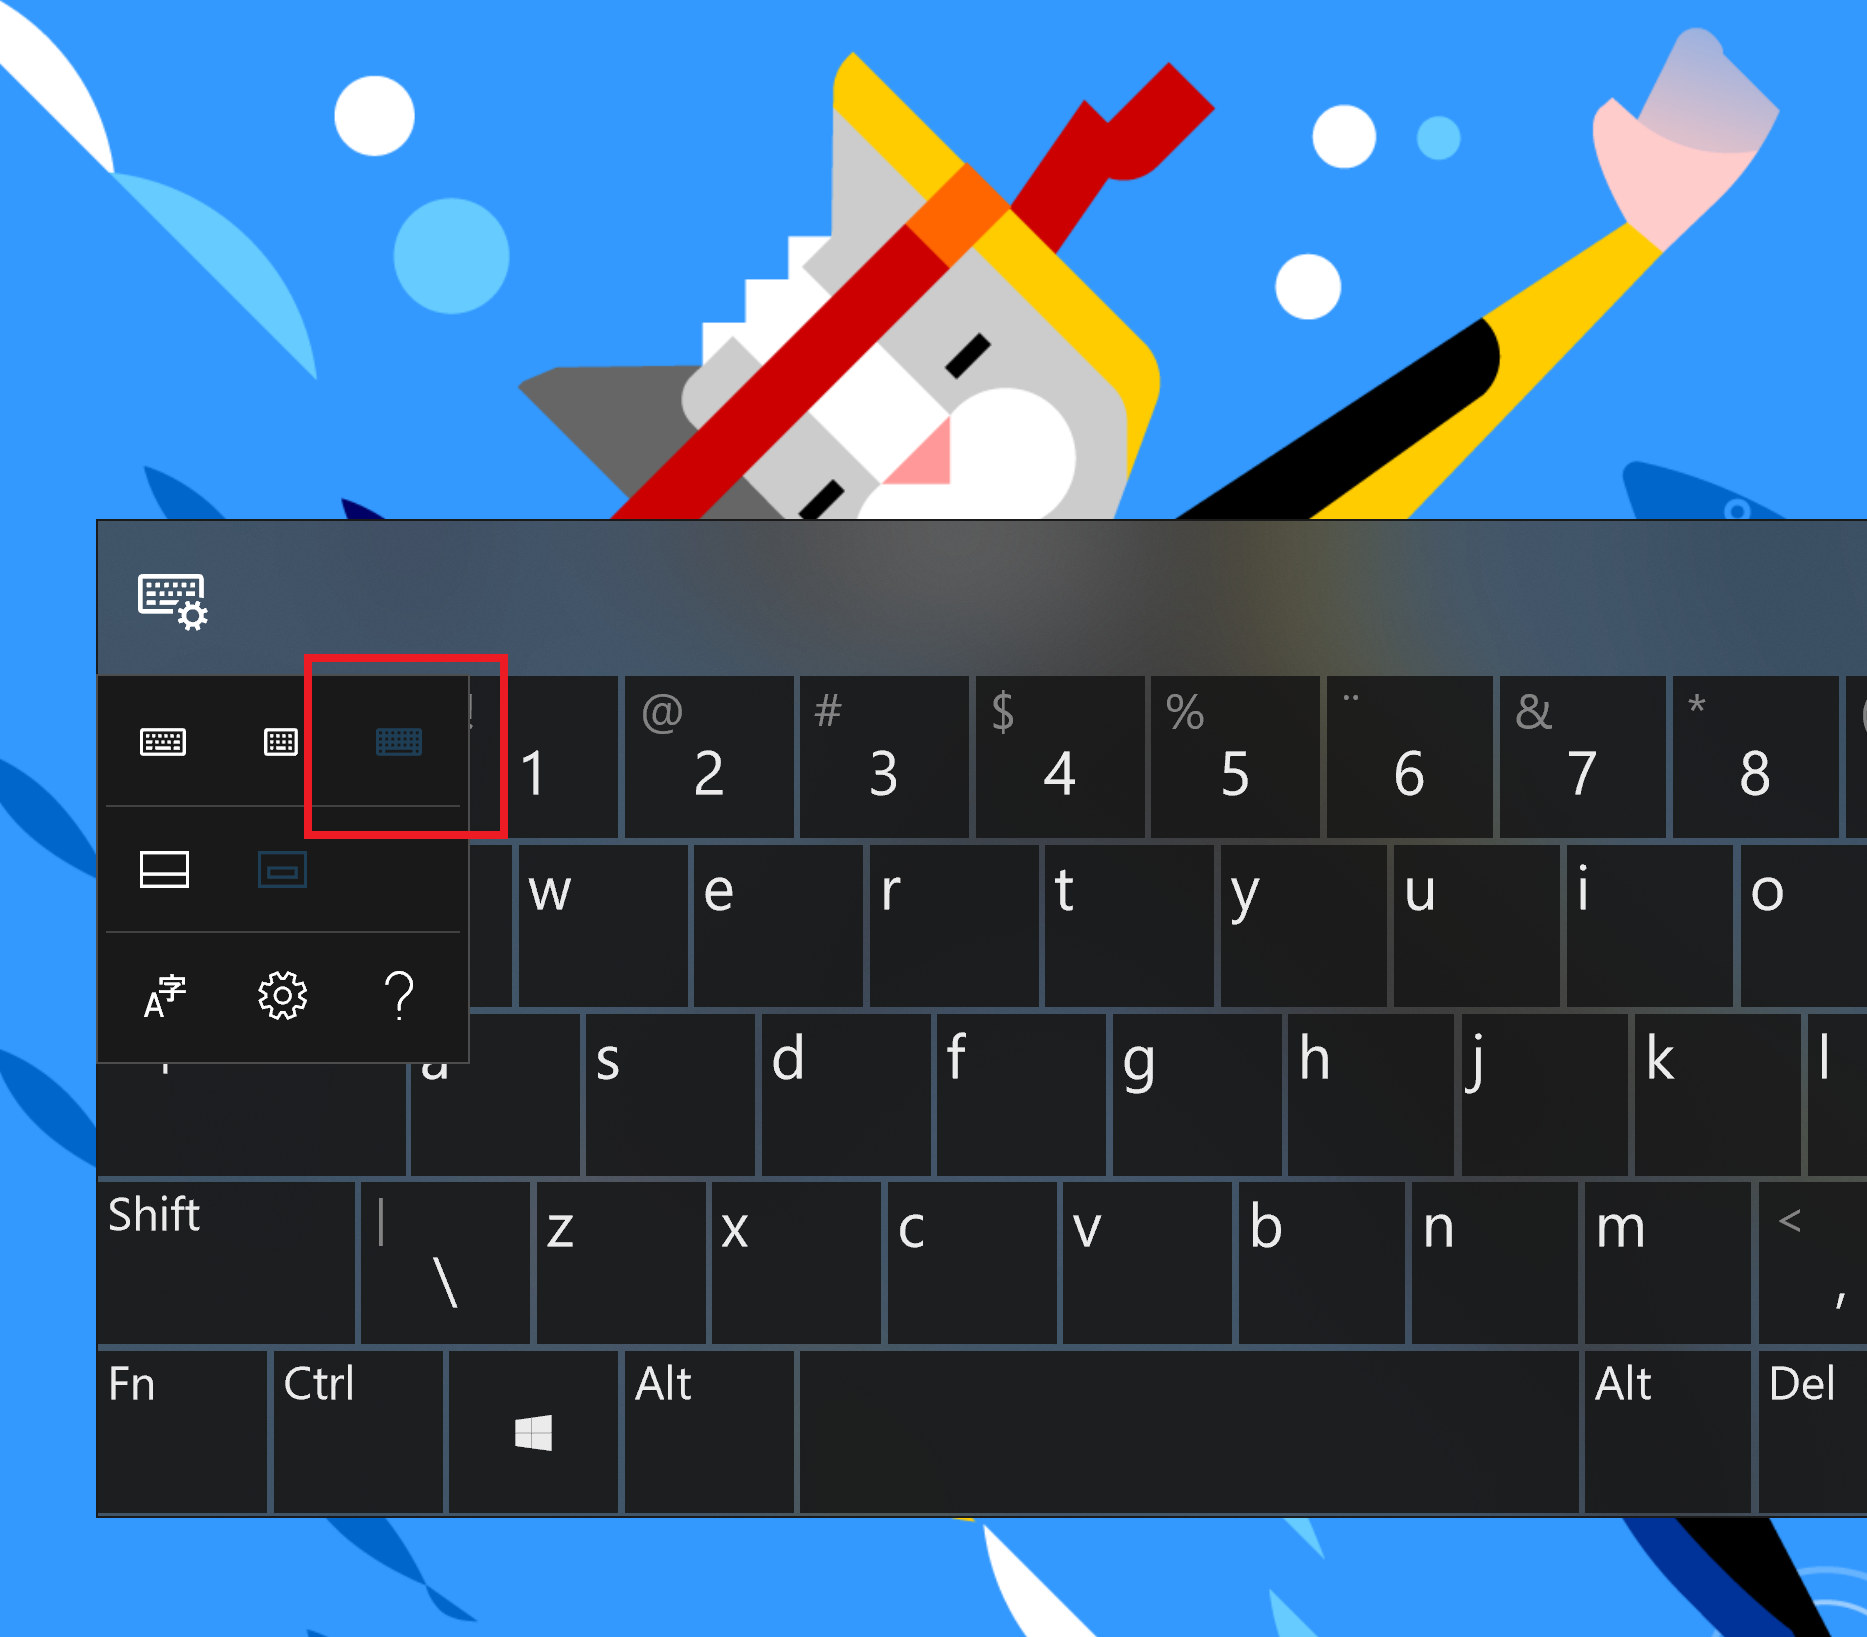 сенсорная клавиатура теперь поддерживает стандартную раскладку для всех языков